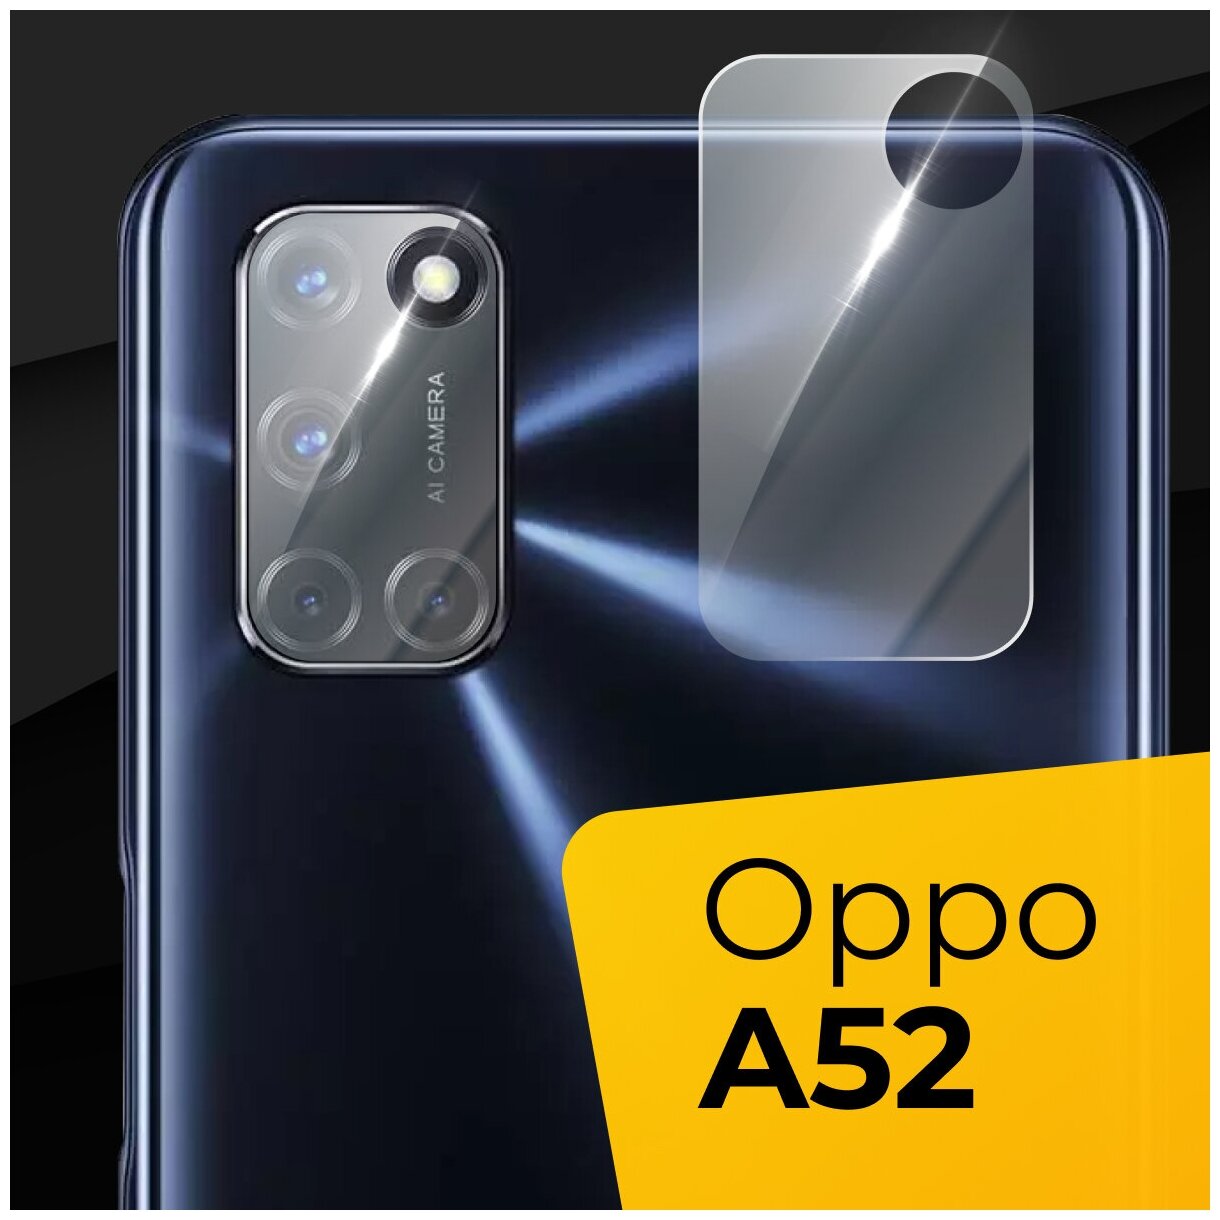 Противоударное защитное стекло для камеры телефона Oppo A52 / Тонкое прозрачное стекло на камеру смартфона Оппо А52 / Защита задней камеры